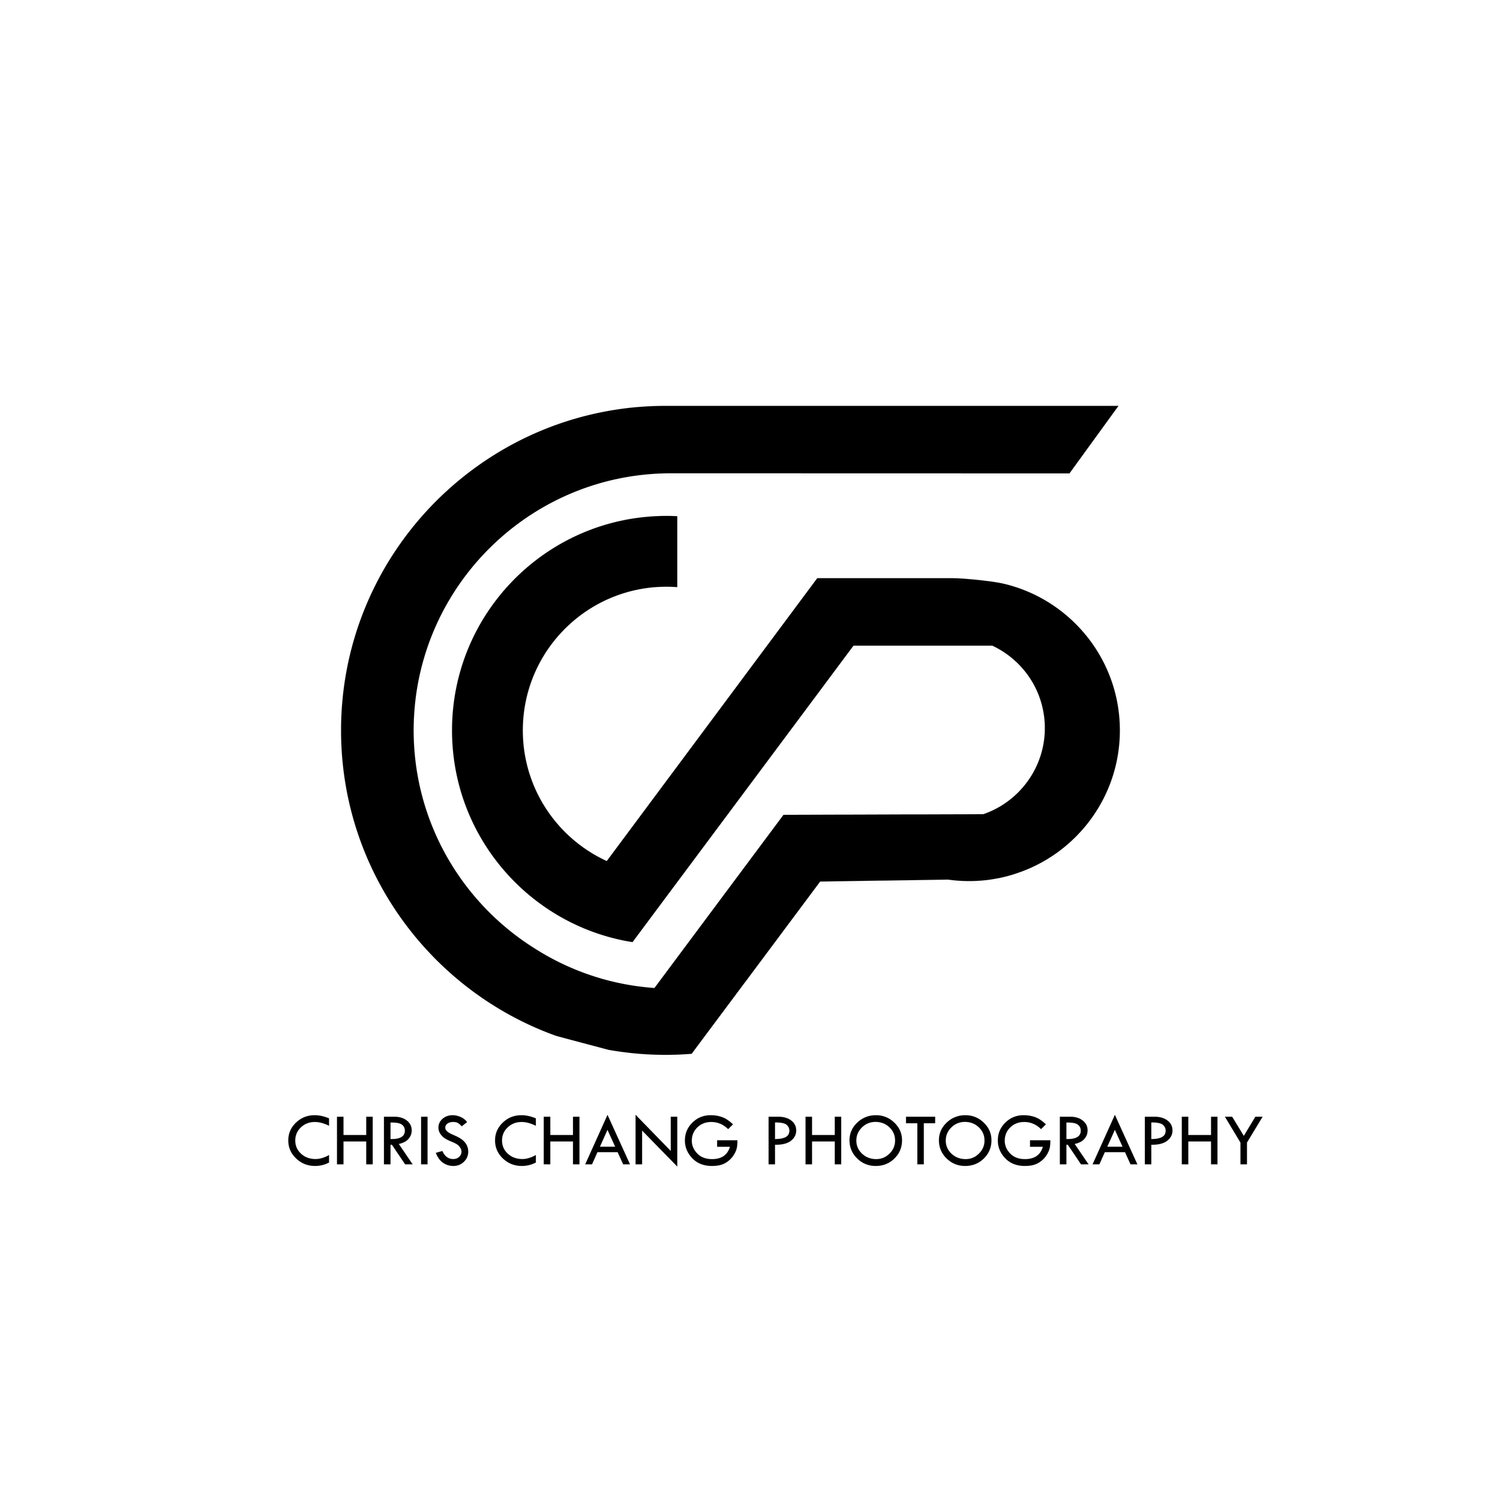 Chris Chang Photography